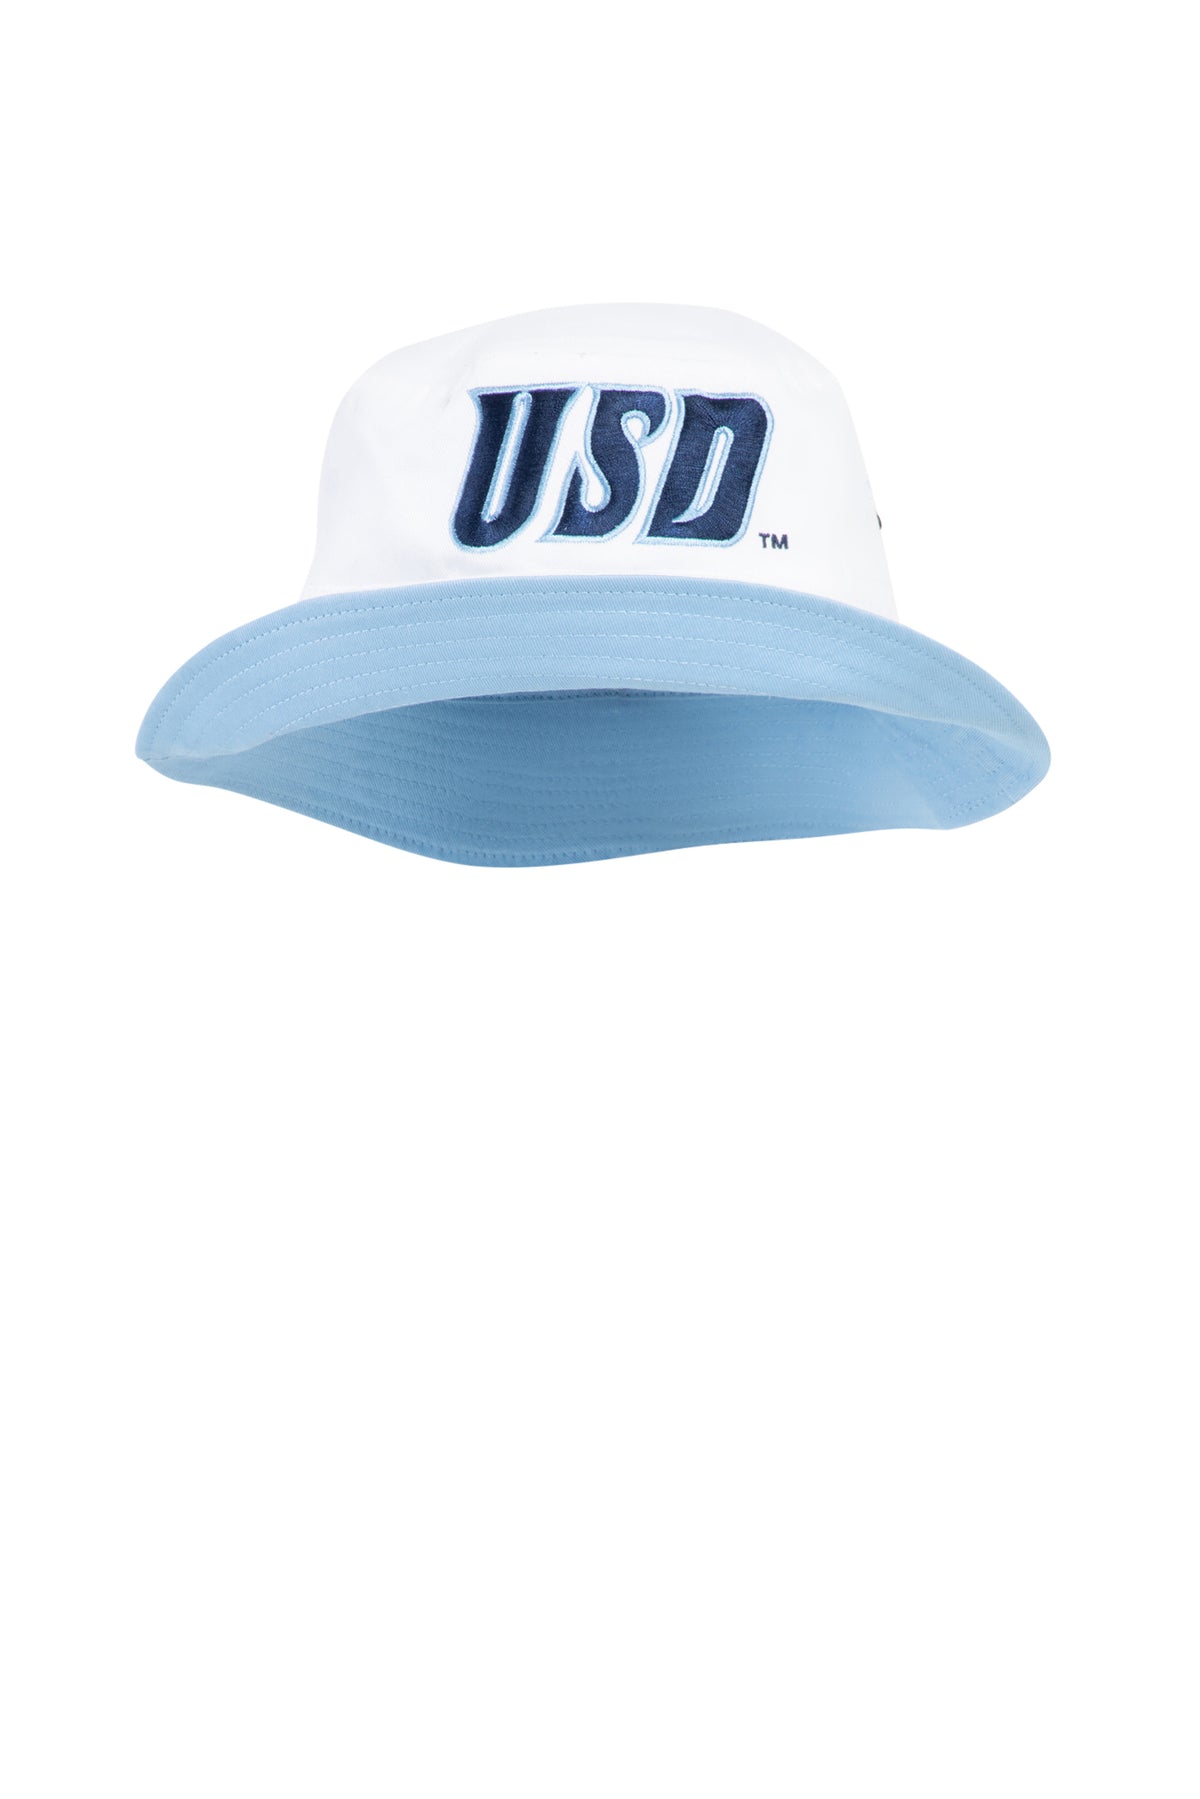 USD Reversible Bucket Hat